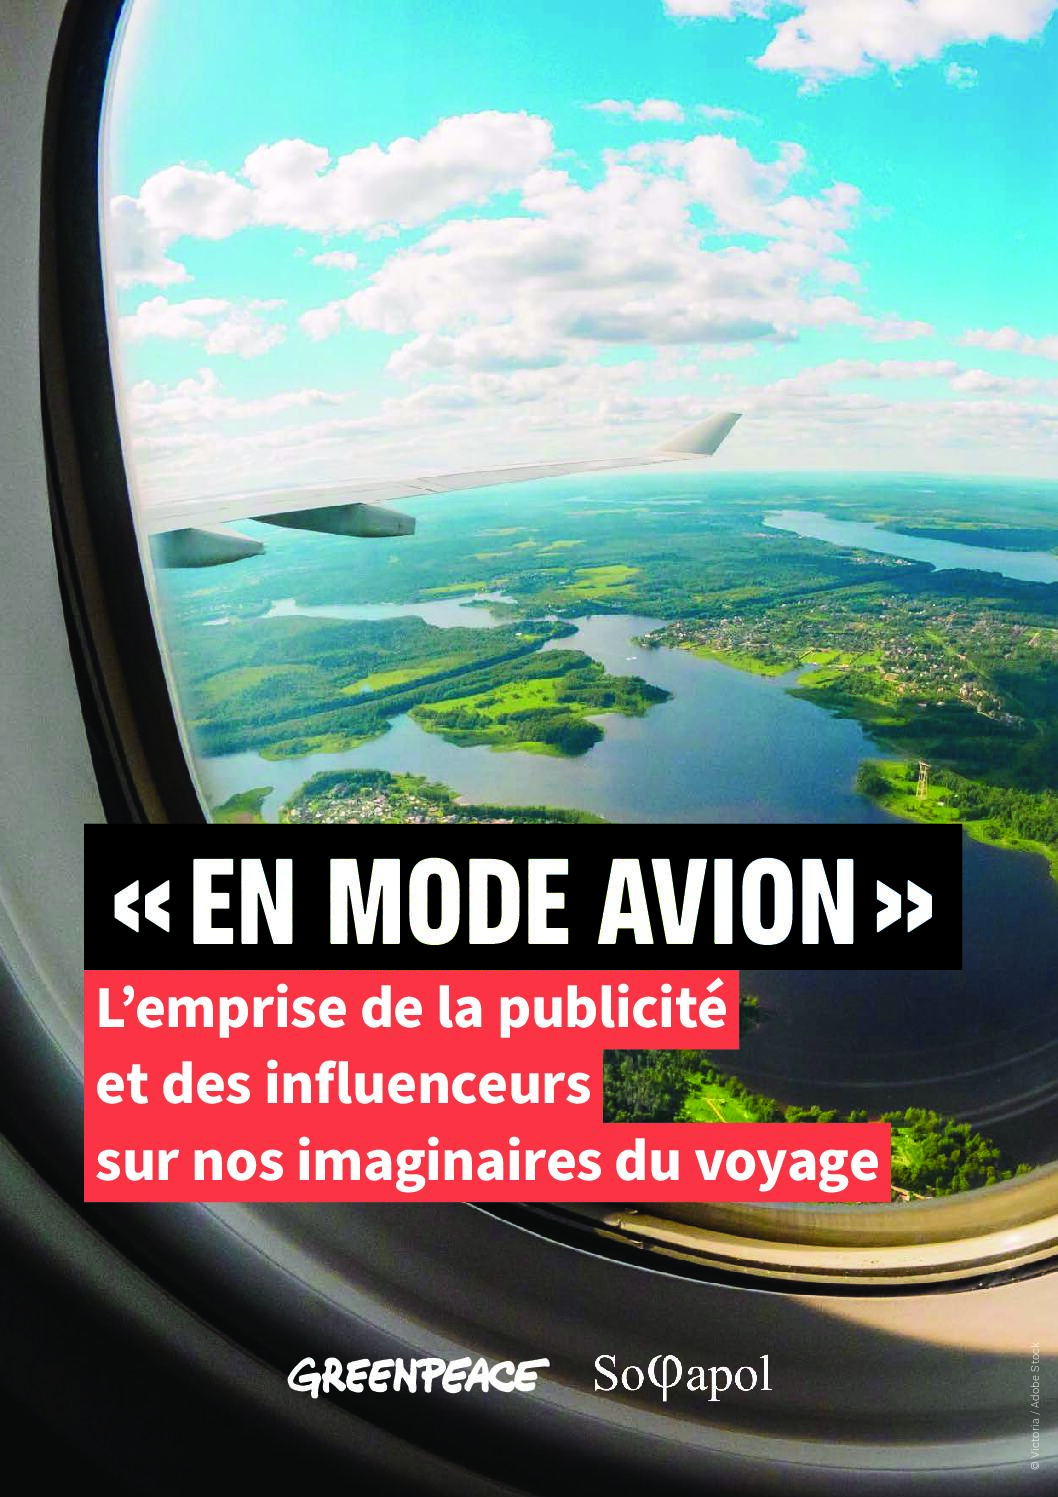 « En mode avion » : l’influence d’Instagram et de la publicité sur nos imaginaires du voyage